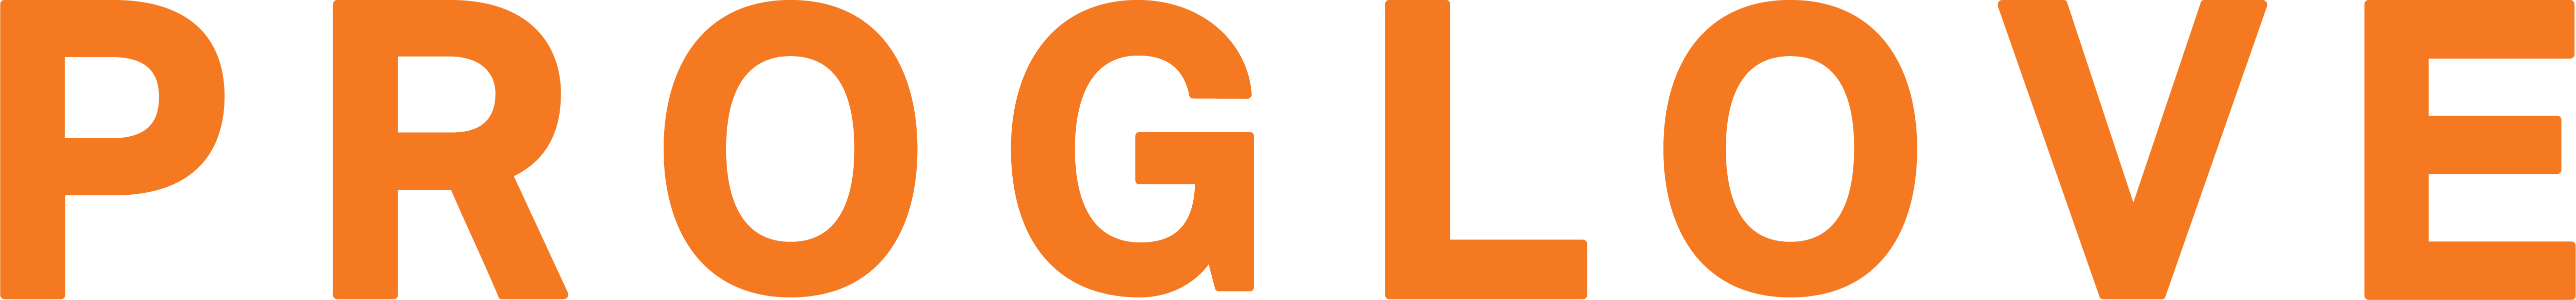 Proglove logo